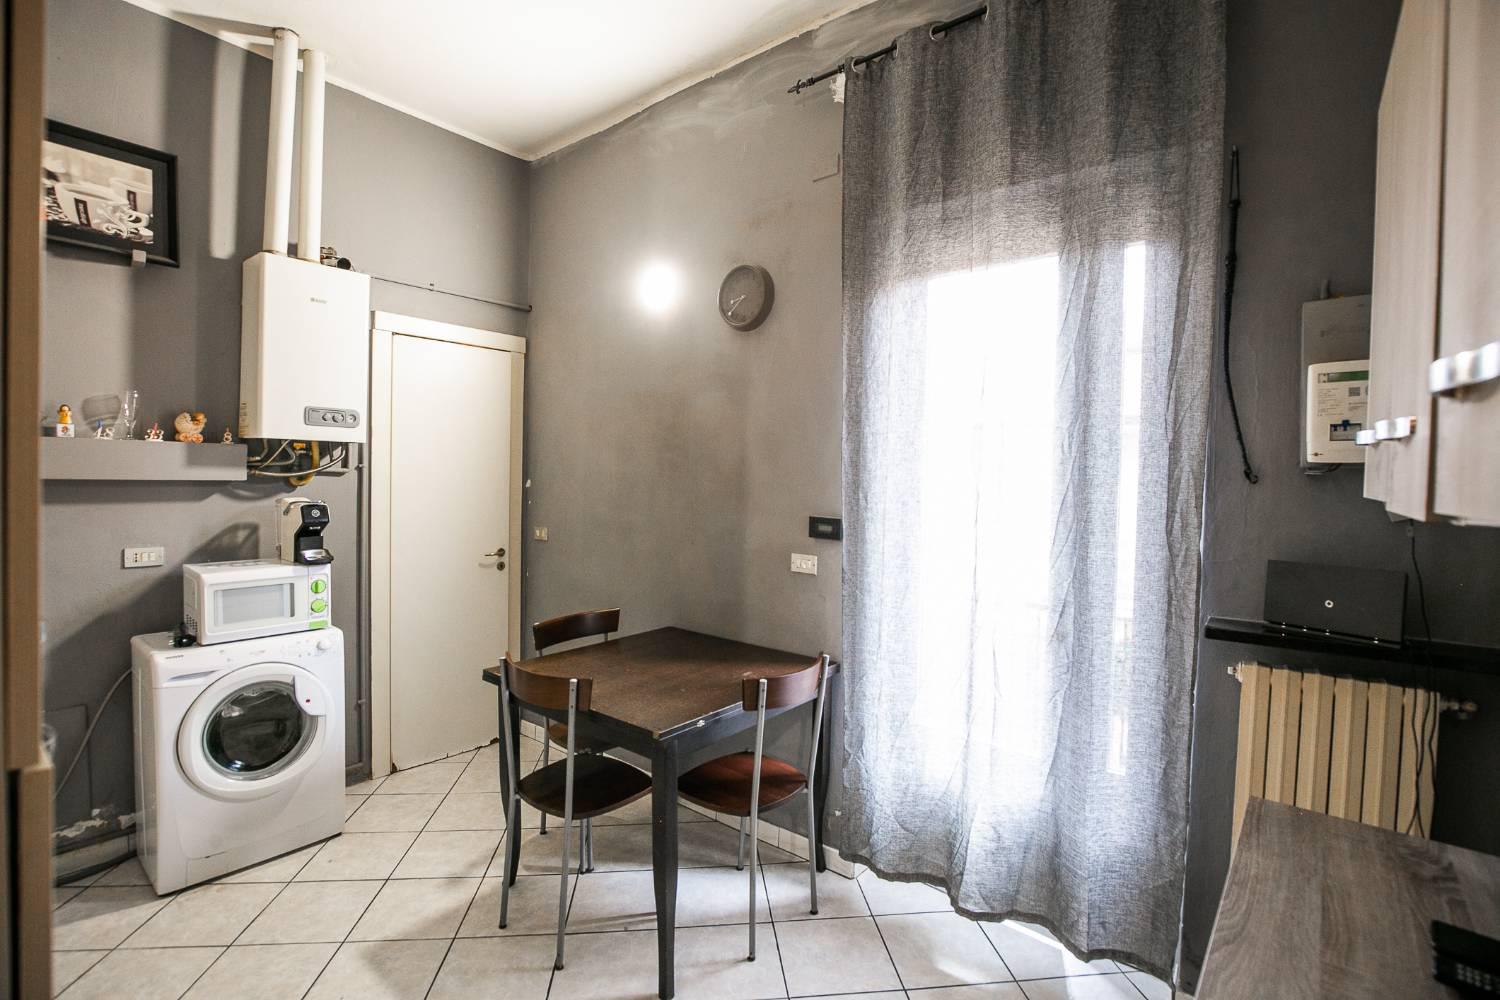 Appartamento in vendita a Senago, 2 locali, prezzo € 60.000 | PortaleAgenzieImmobiliari.it